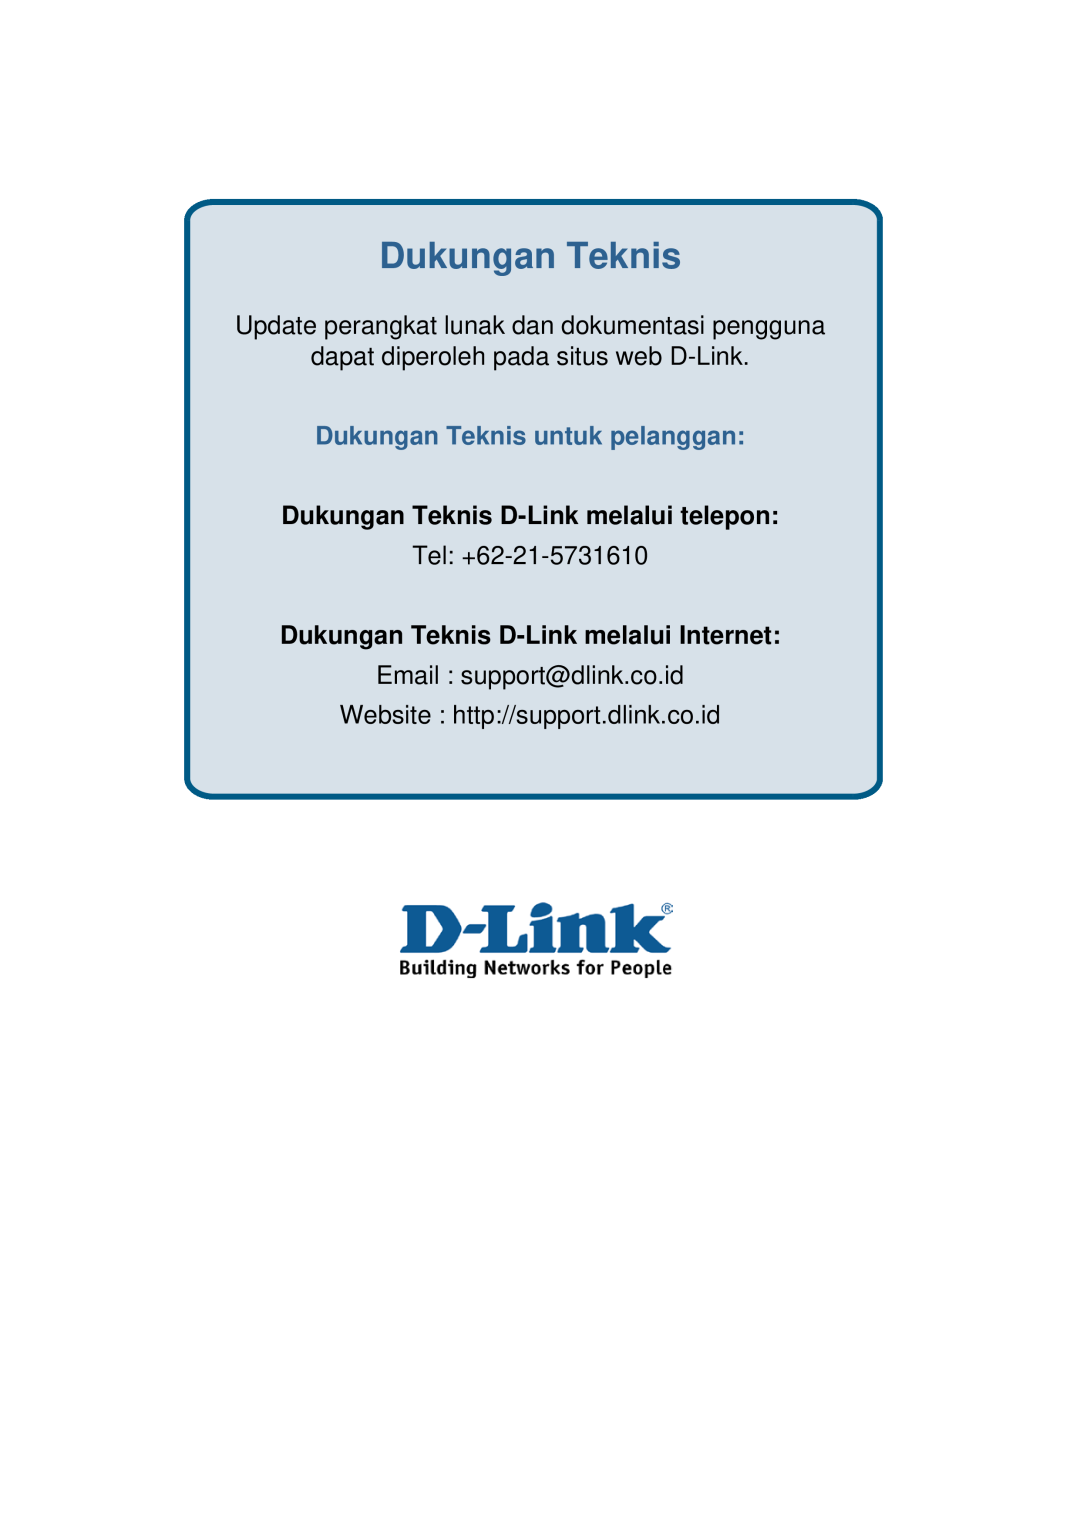 D-Link ethernet managed switch manual Dukungan Teknis, Update perangkat lunak dan dokumentasi pengguna, Tel +62-21-5731610 